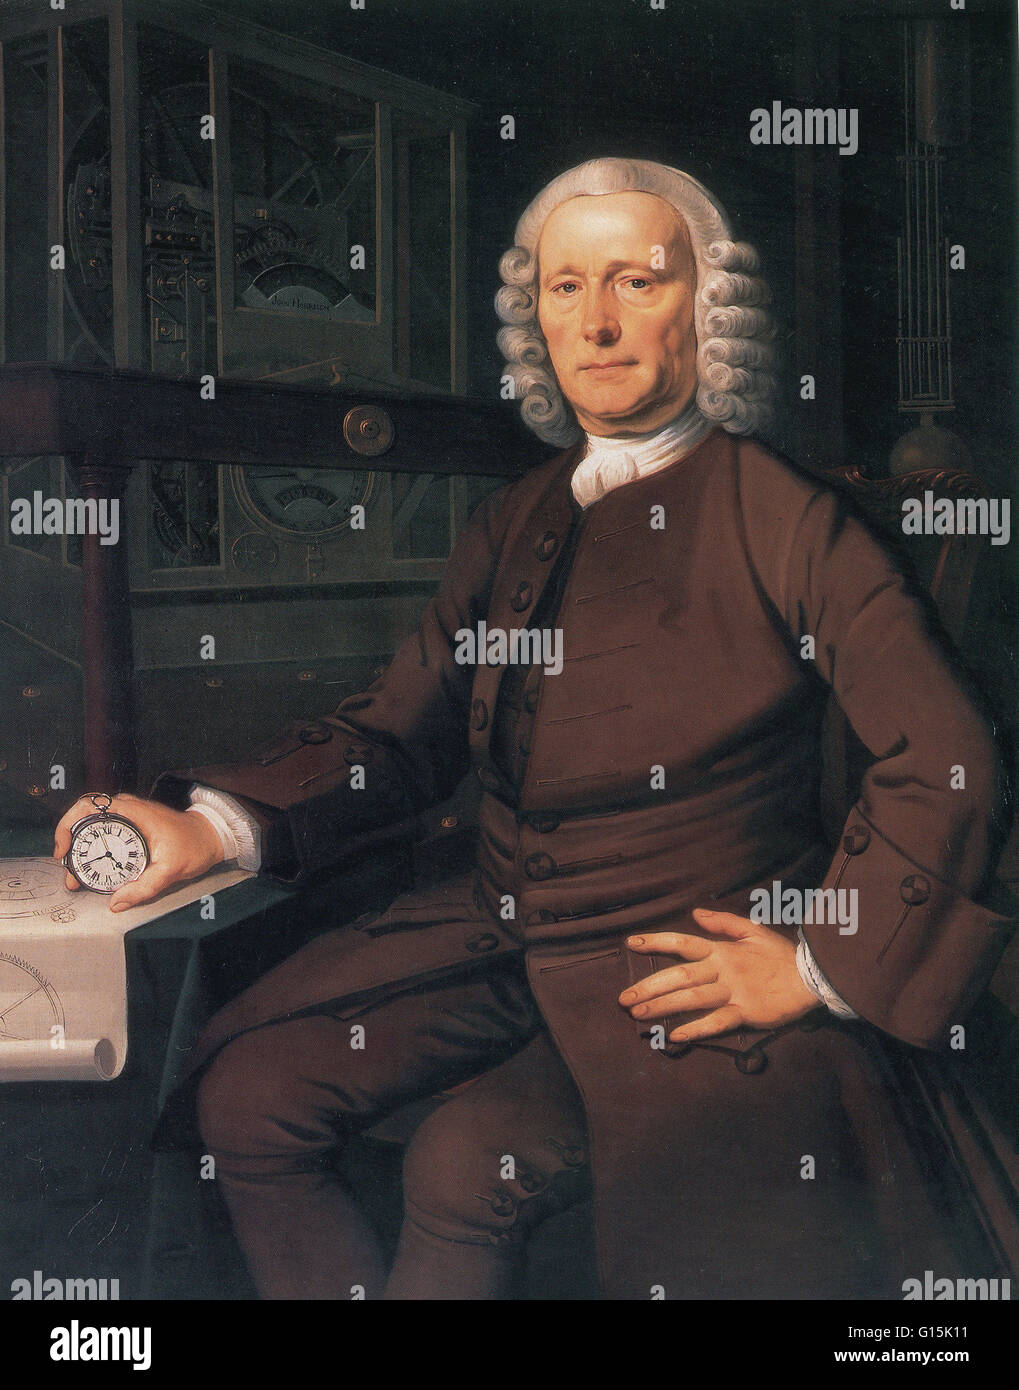 John Harrison (1693-1776) war ein autodidaktischer englischen Uhrmacher. Er erfand die Marinechronometer. Ein marine Chronometer ist eine Uhr, die präzise und genau genug, um als eine tragbare Zeit standard zur Bestimmung der Länge mittels Celest einsetzbar ist Stockfoto